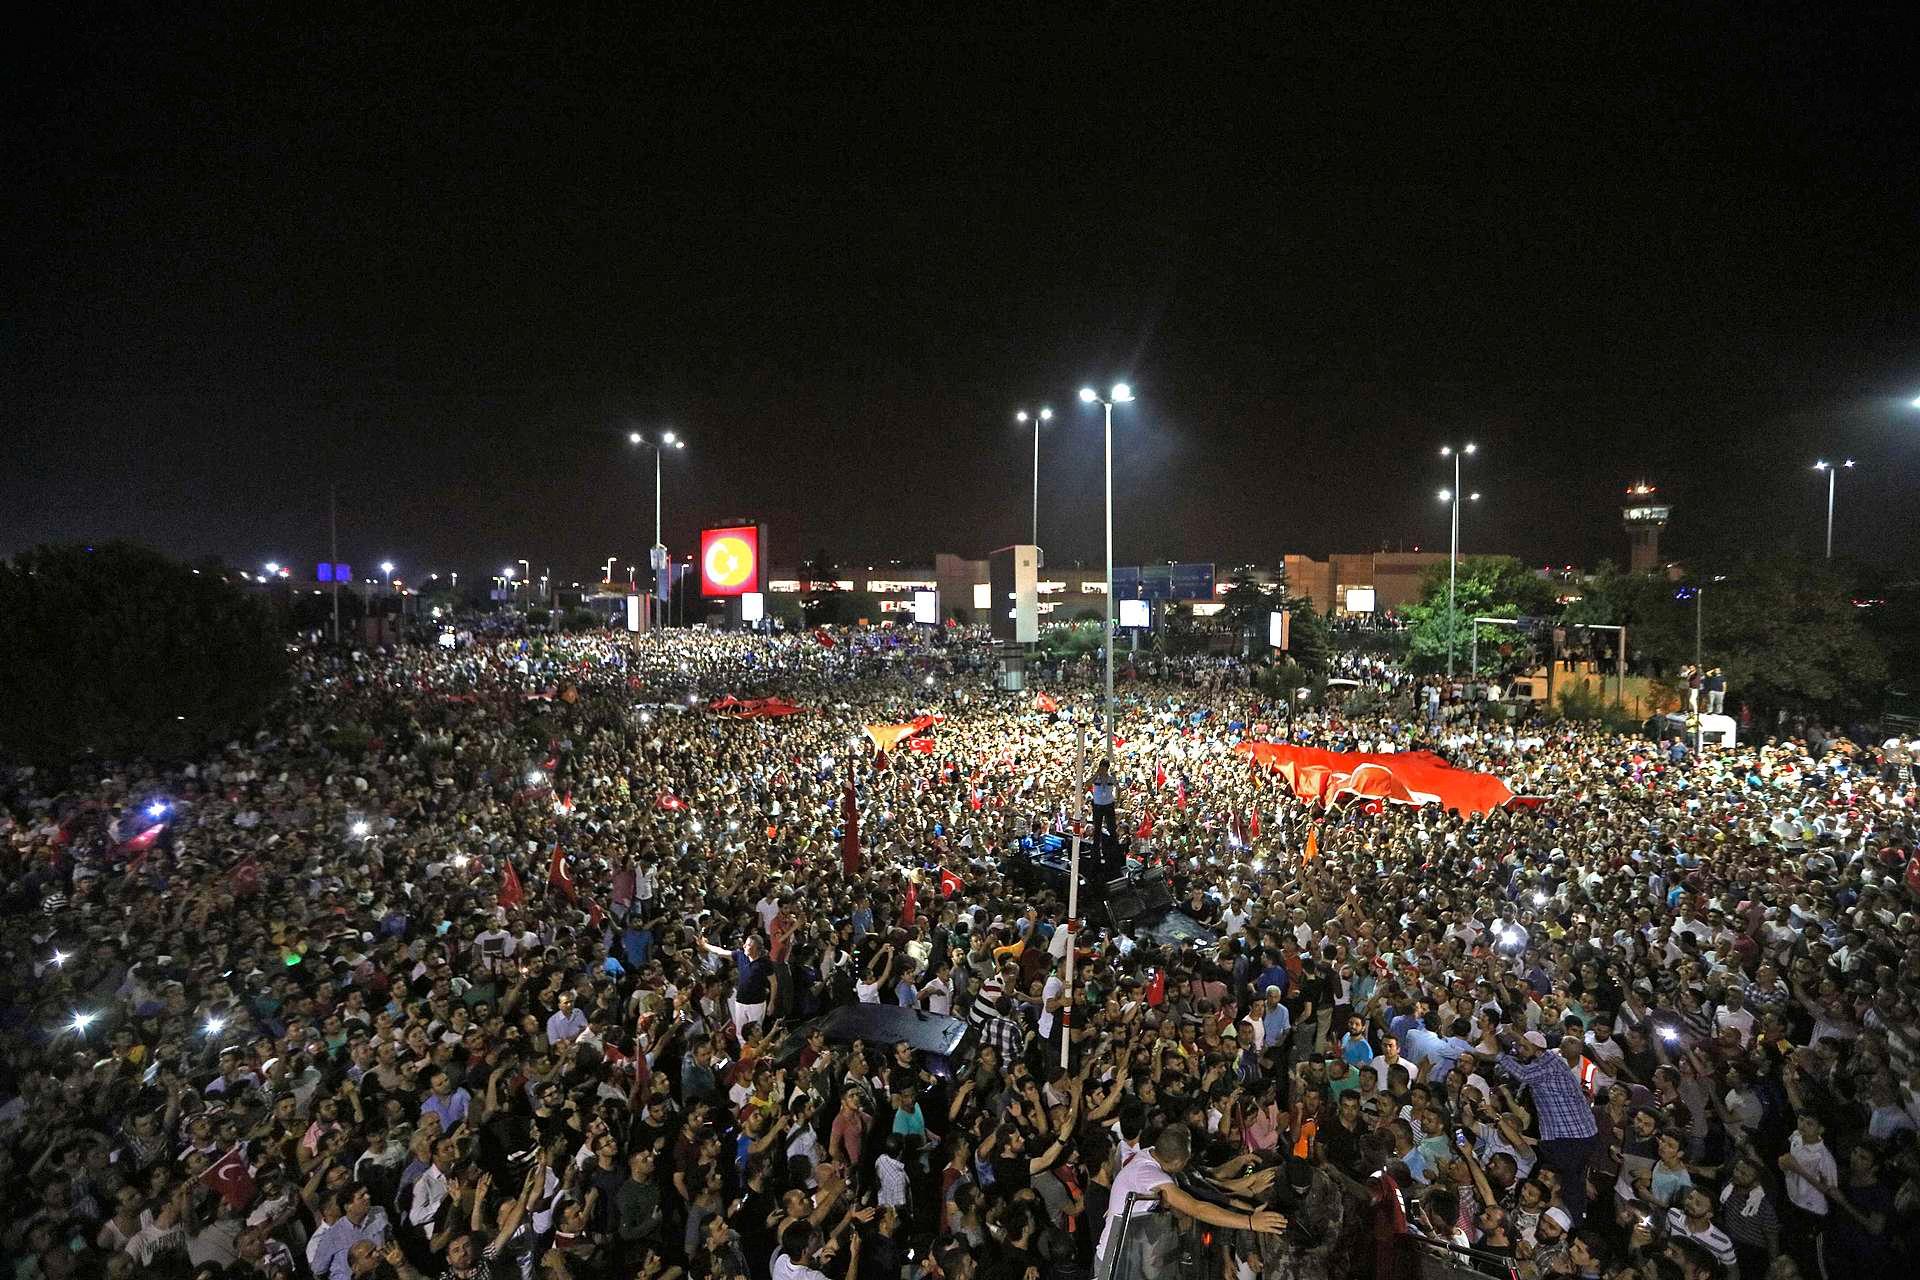 Fra ukjent sted maner president Erdogan folk til å trekke ut i gatene. Han blir hørt. Enorme menneskemengder samler seg i protest ved Atatürk-flyplassen i Istanbul.